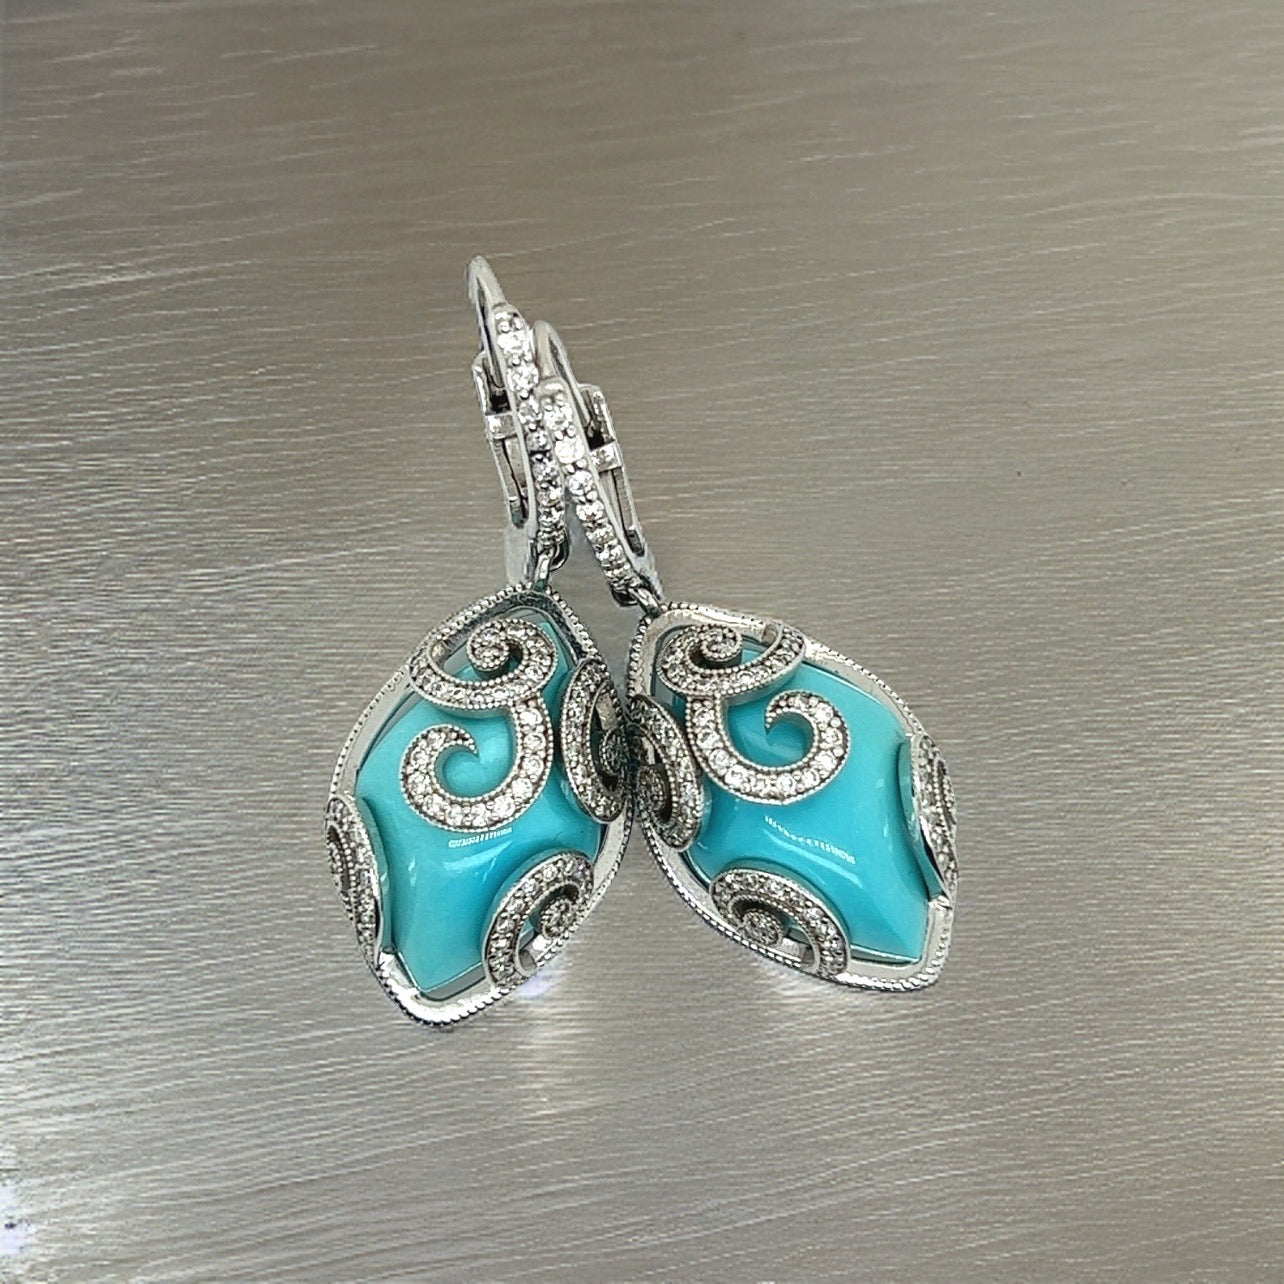 Persian Turquoise Diamond Pendant Earrings 14k WG 26.85 TCW Certified $9,490 211947 - Certified Fine Jewelry